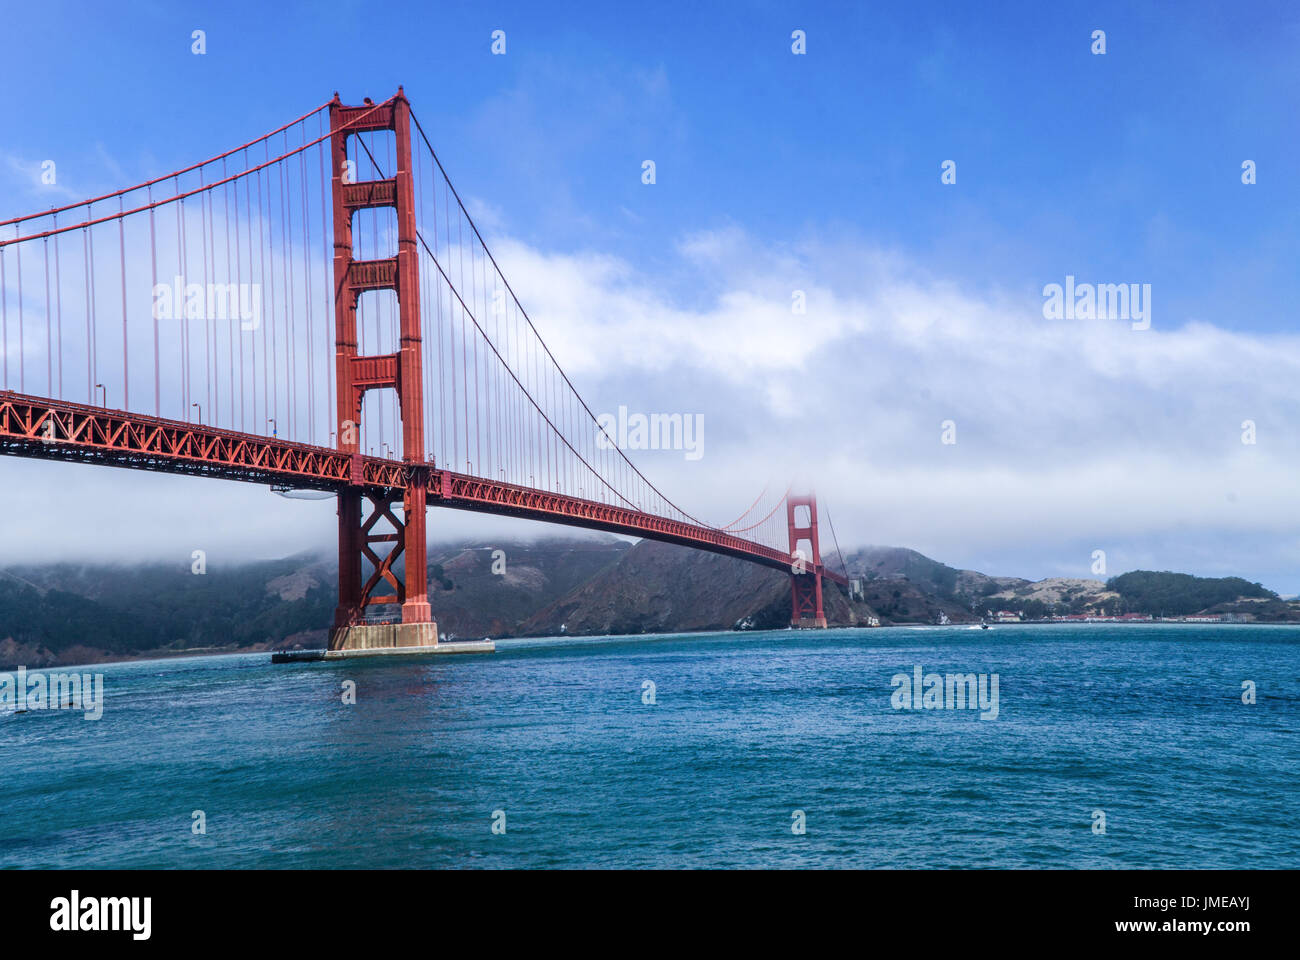 Il Golden Gate Bridge su una tipica mattinata nebbiosa sulla baia Foto Stock